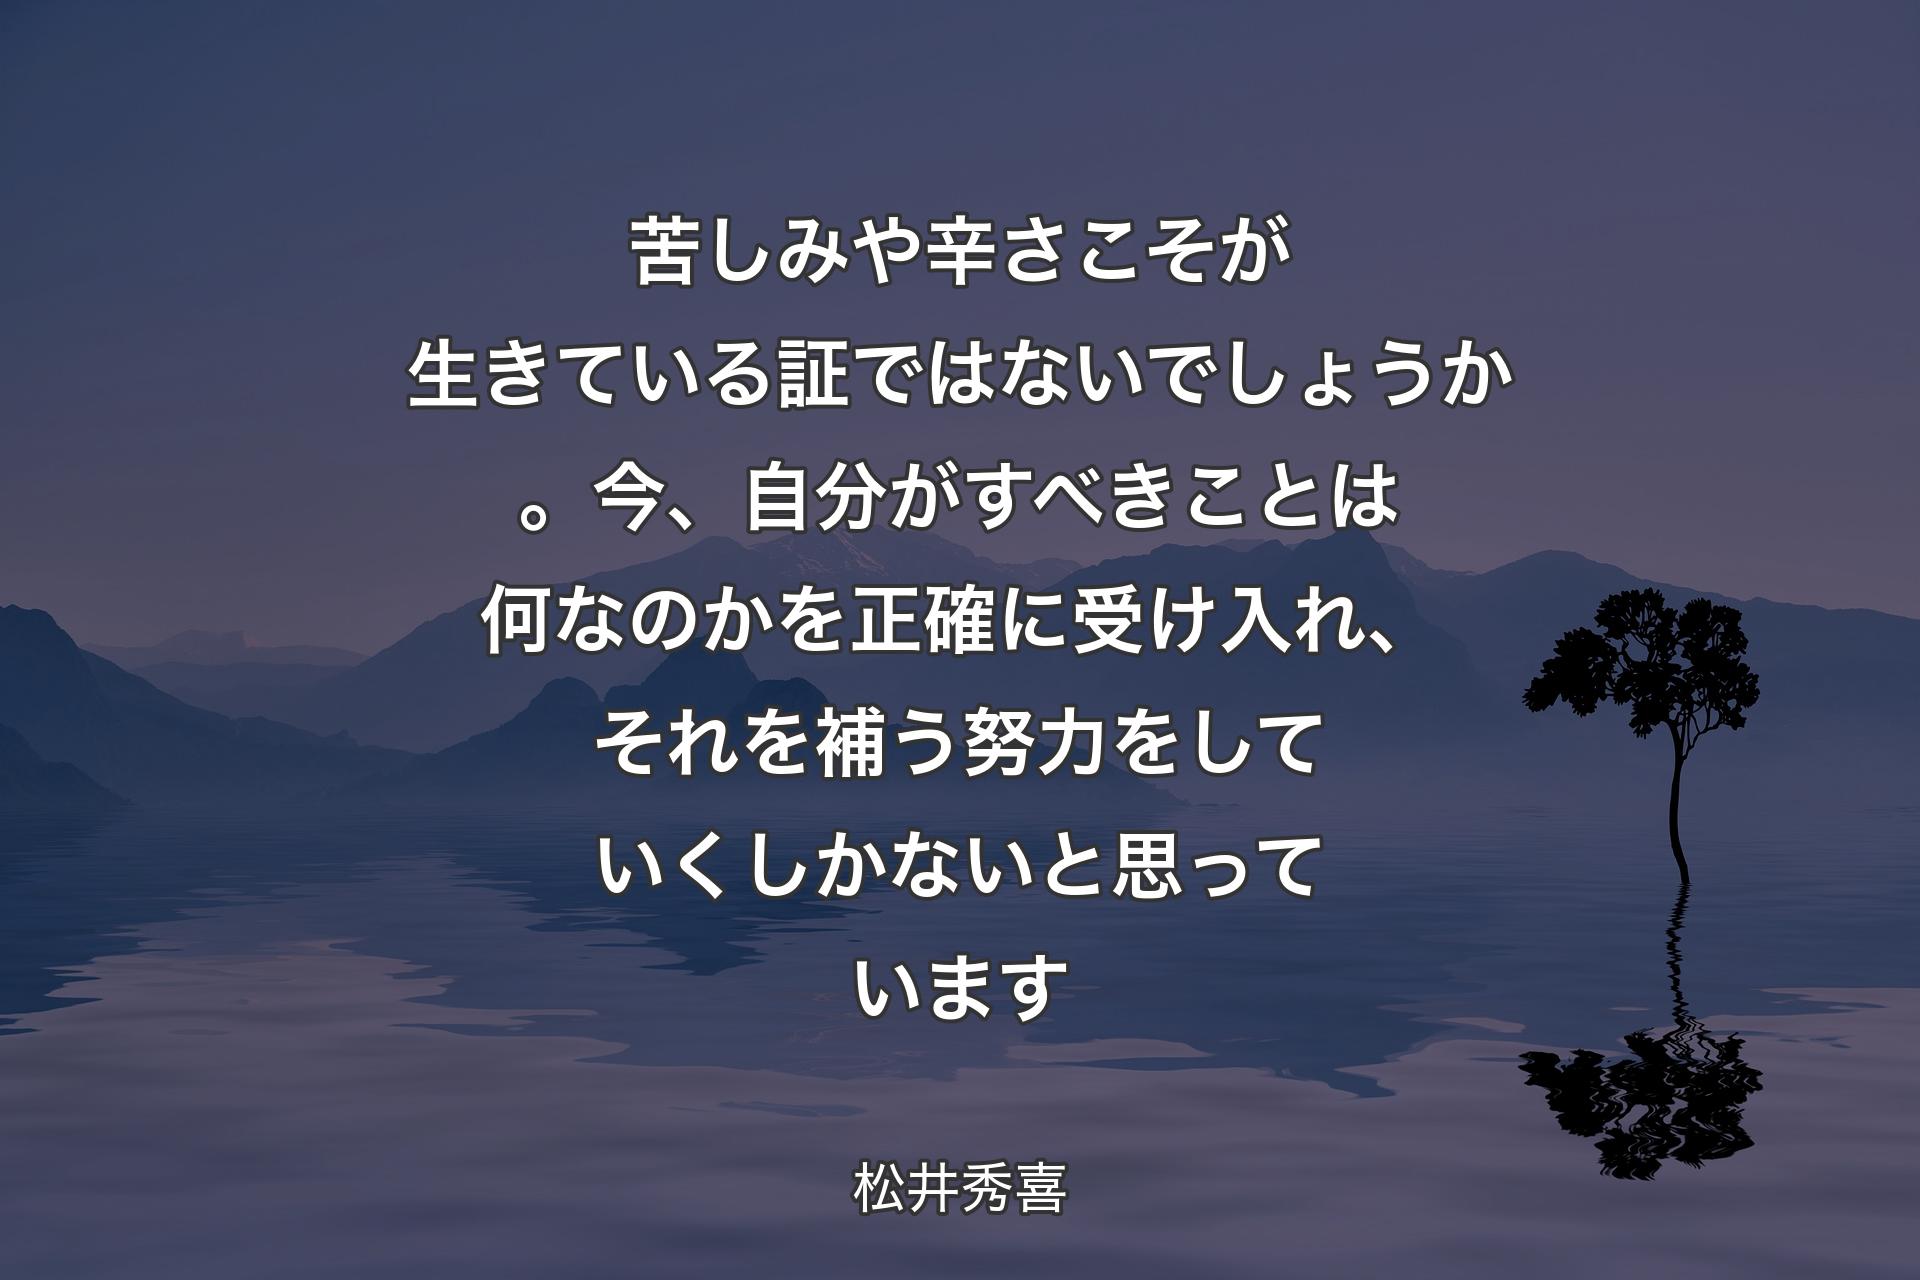 【背景4】苦しみや辛さこそが生きている証ではないでしょうか。今、自分がすべきことは何なのかを正確に受け入れ、それを補う努力をしていくしかないと思っています - 松井秀喜